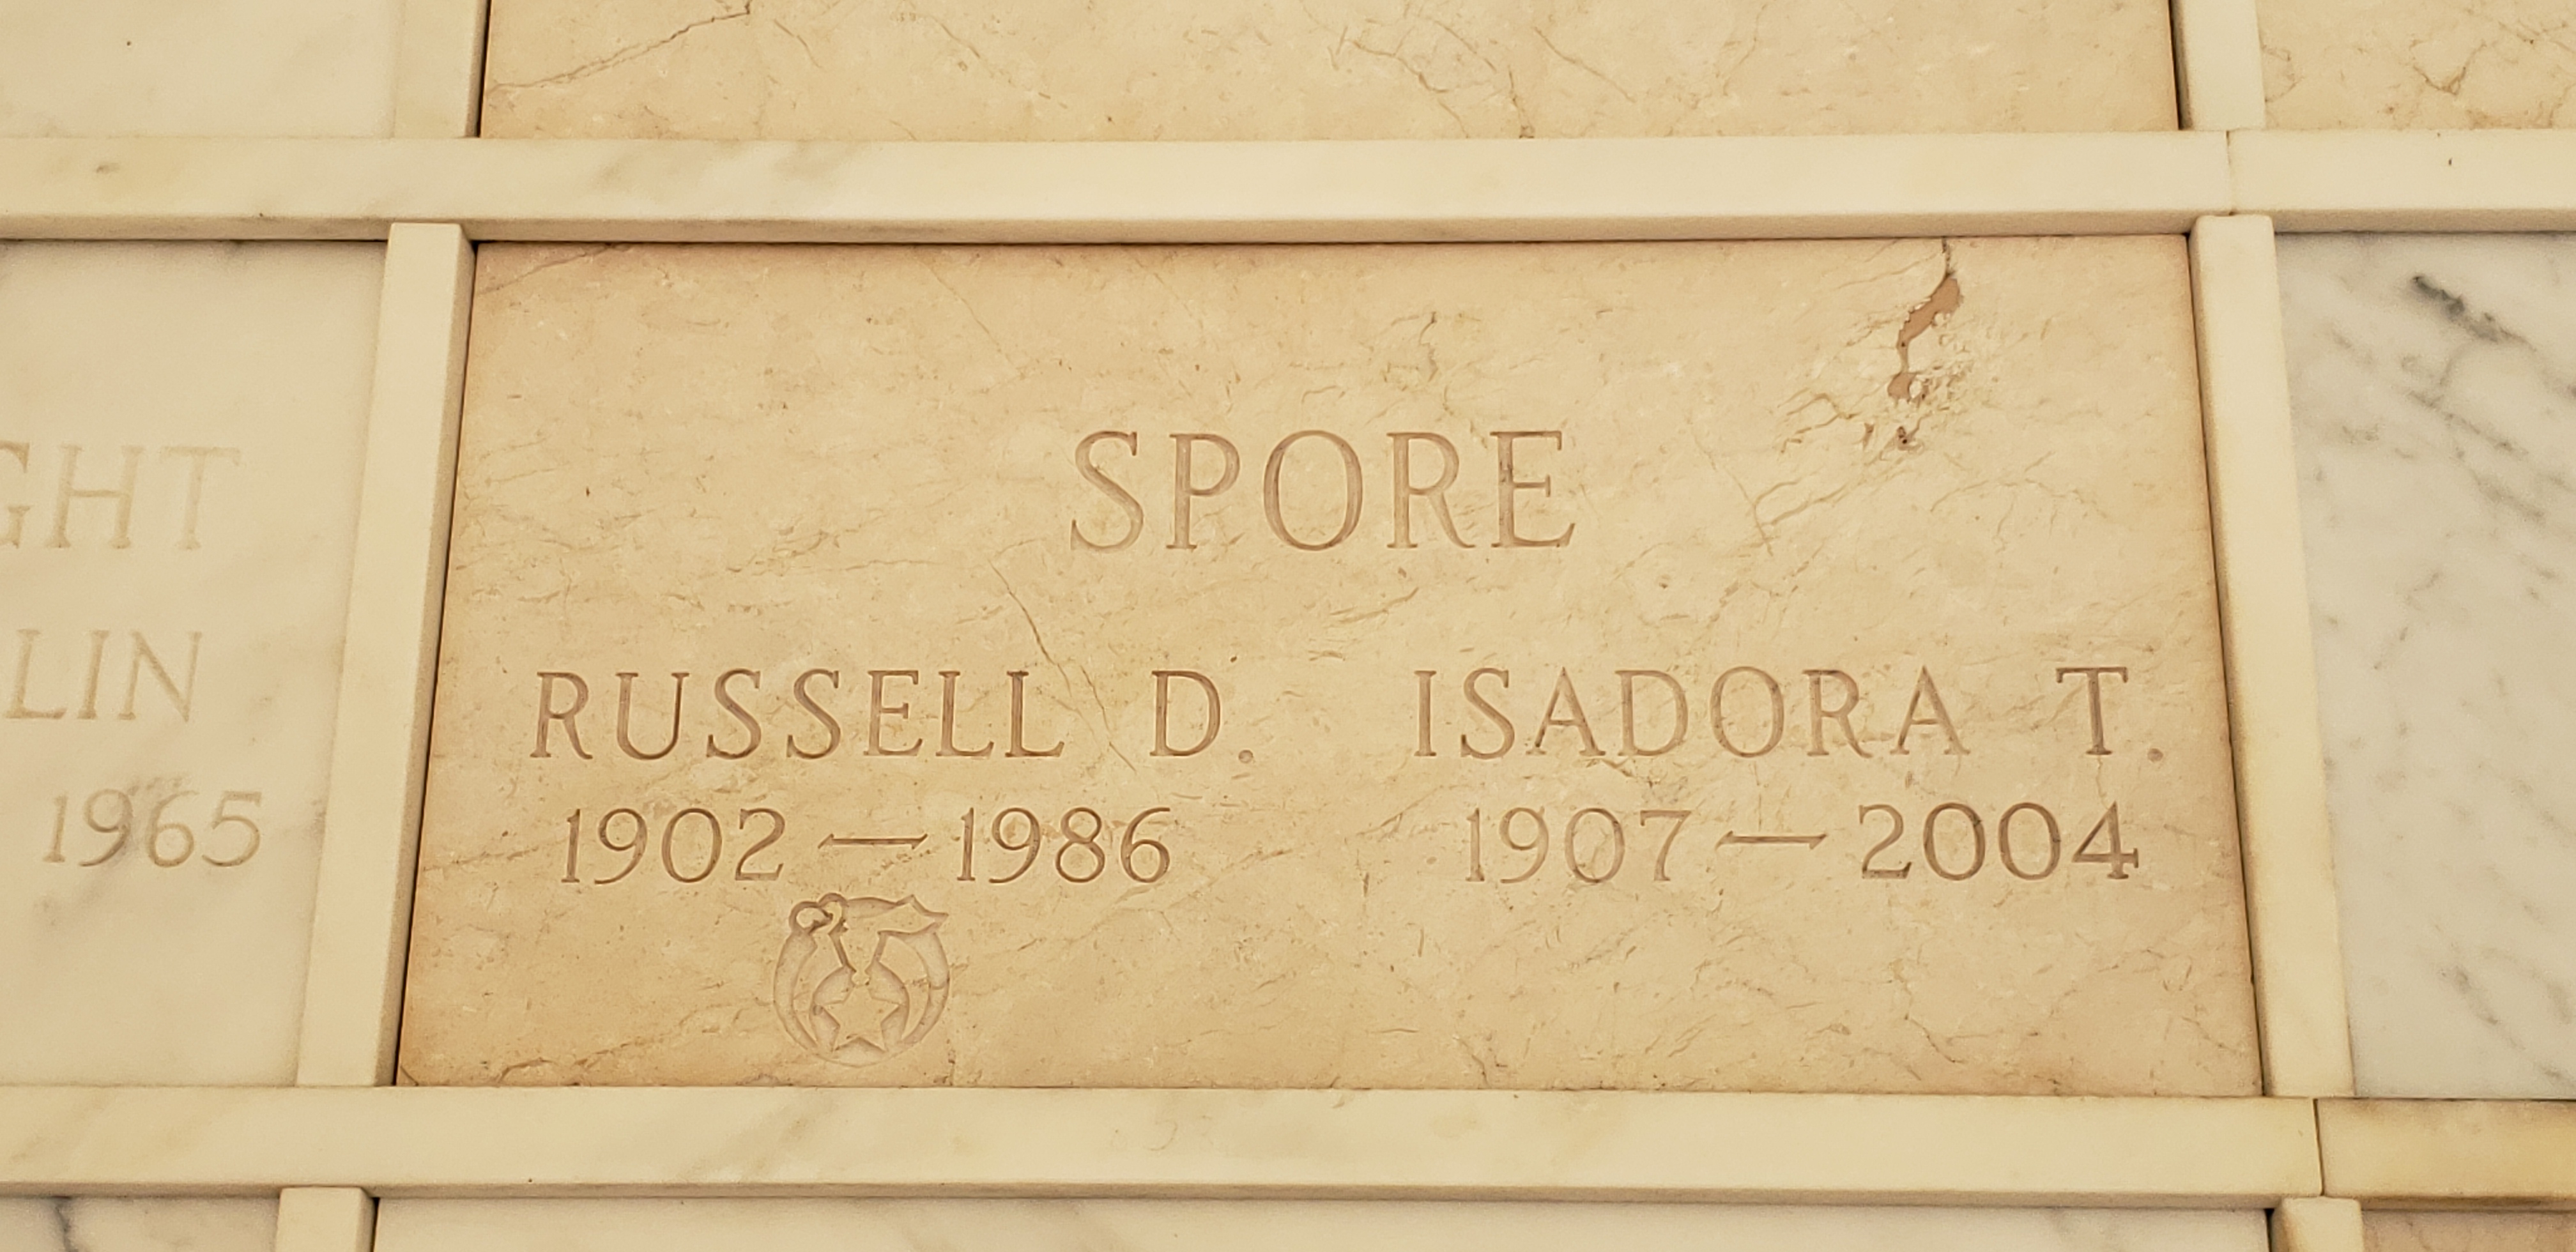 Isadora T Spore